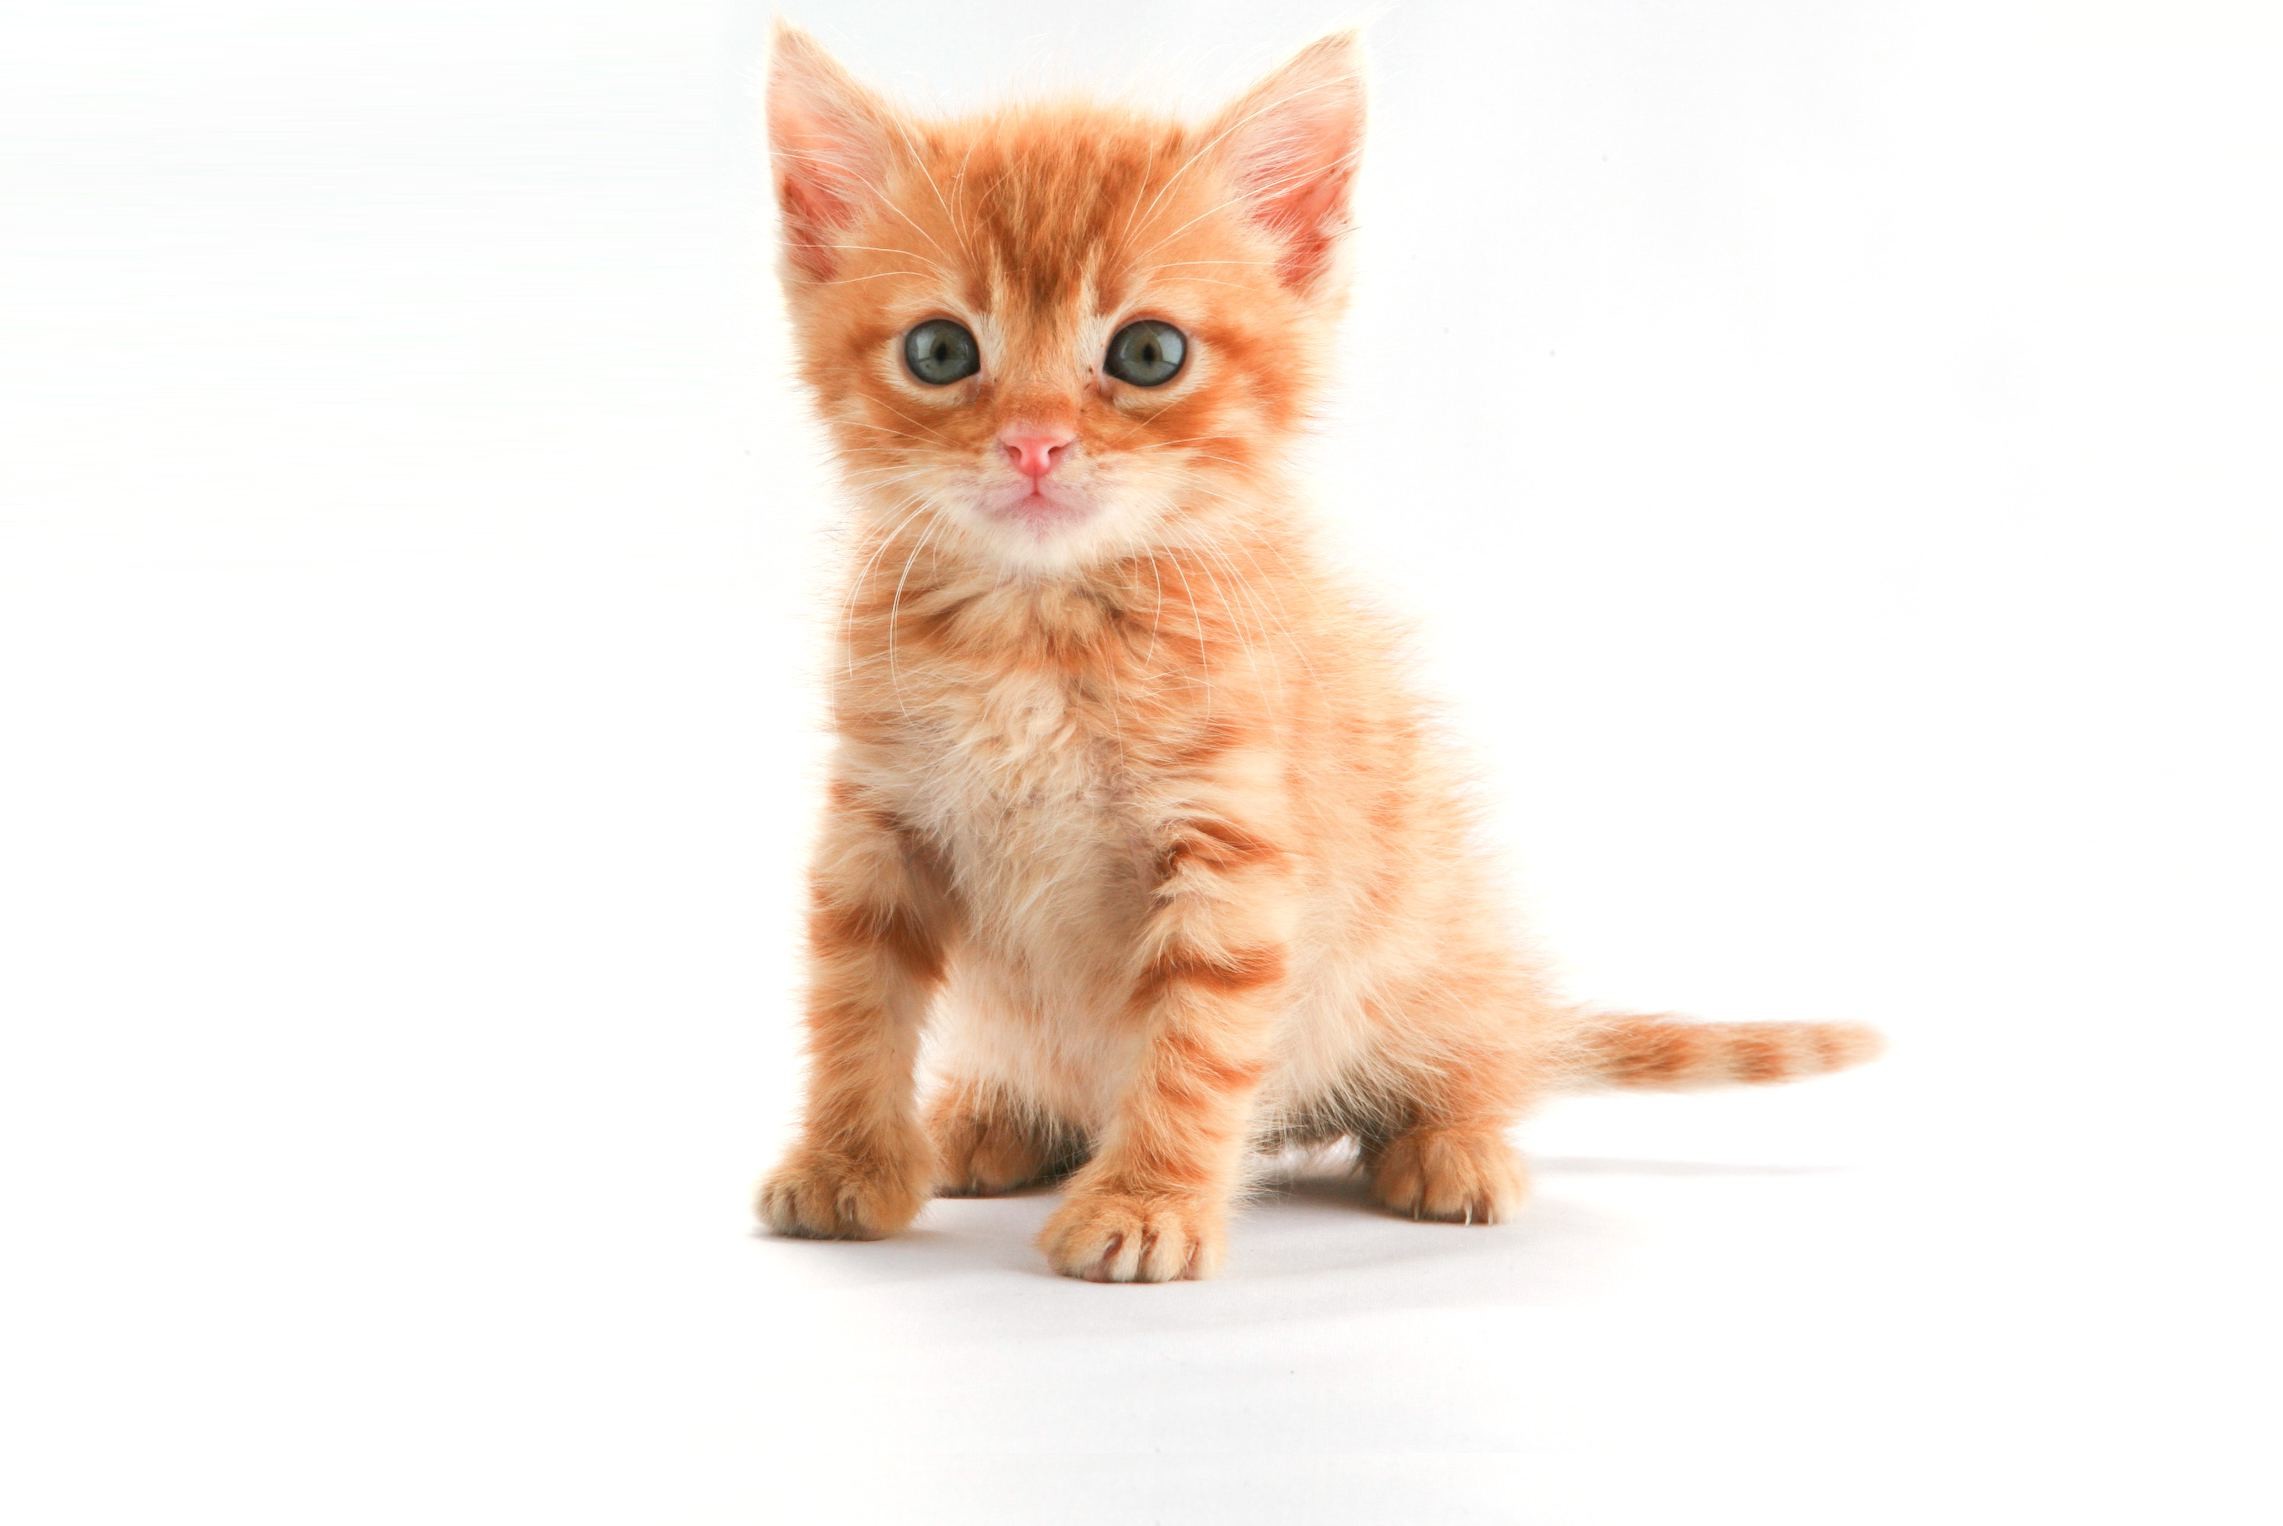 2283x1526 The Little Orange Kitten wallpaper - Animal Backgrounds